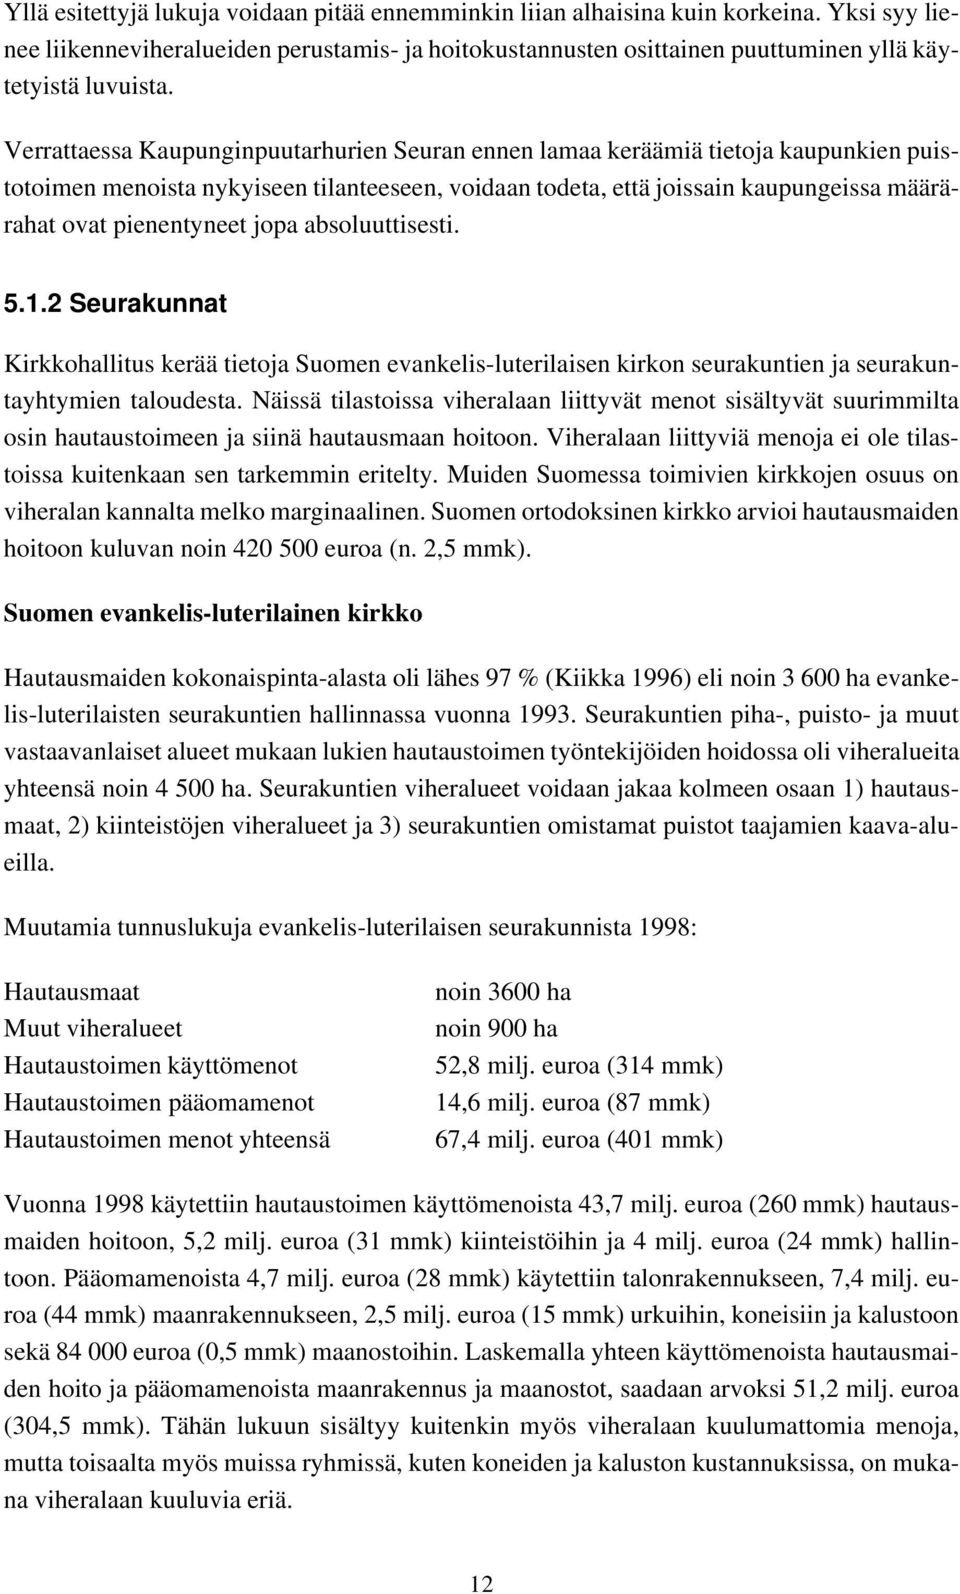 jopa absoluuttisesti. 5.1.2 Seurakunnat Kirkkohallitus kerää tietoja Suomen evankelis-luterilaisen kirkon seurakuntien ja seurakuntayhtymien taloudesta.